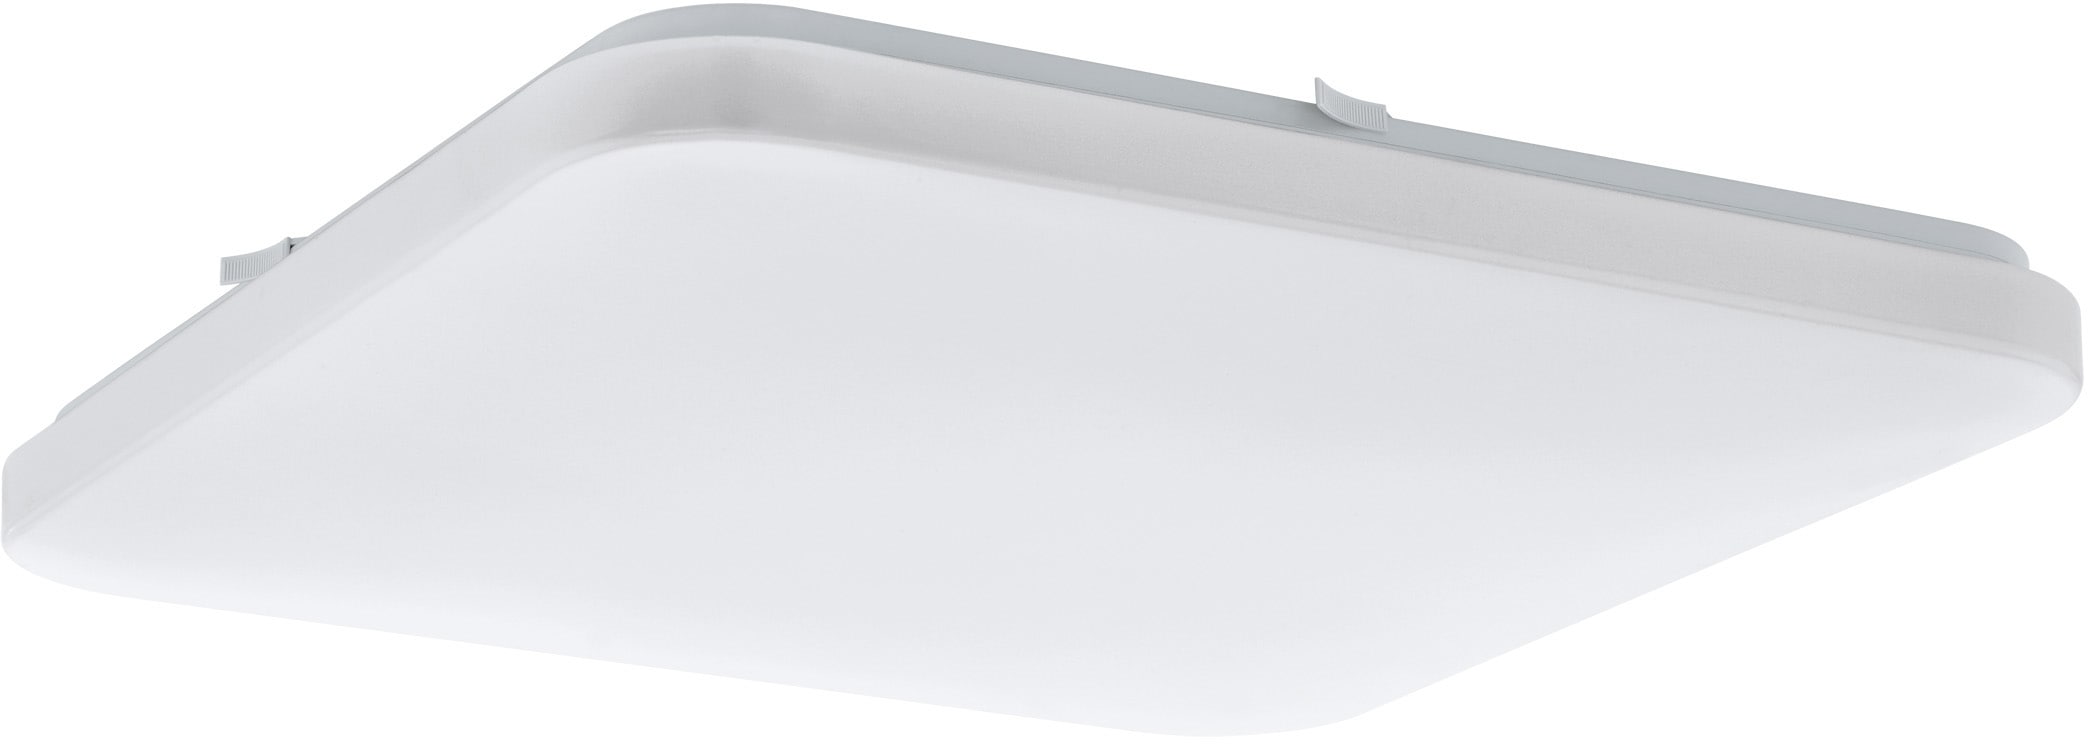 EGLO Deckenleuchte FRANIA, LED-Board, warmweiß, weiß / L43 x H7 x B43 cm / inkl. 1 x LED-Platine (je 33,5W, 3900lm, 3000K) - Deckenlampe - Schlafzimmerlampe - Büroleuchte - Lampe - Schlafzimmer - Flurlampe - Küchenlampe